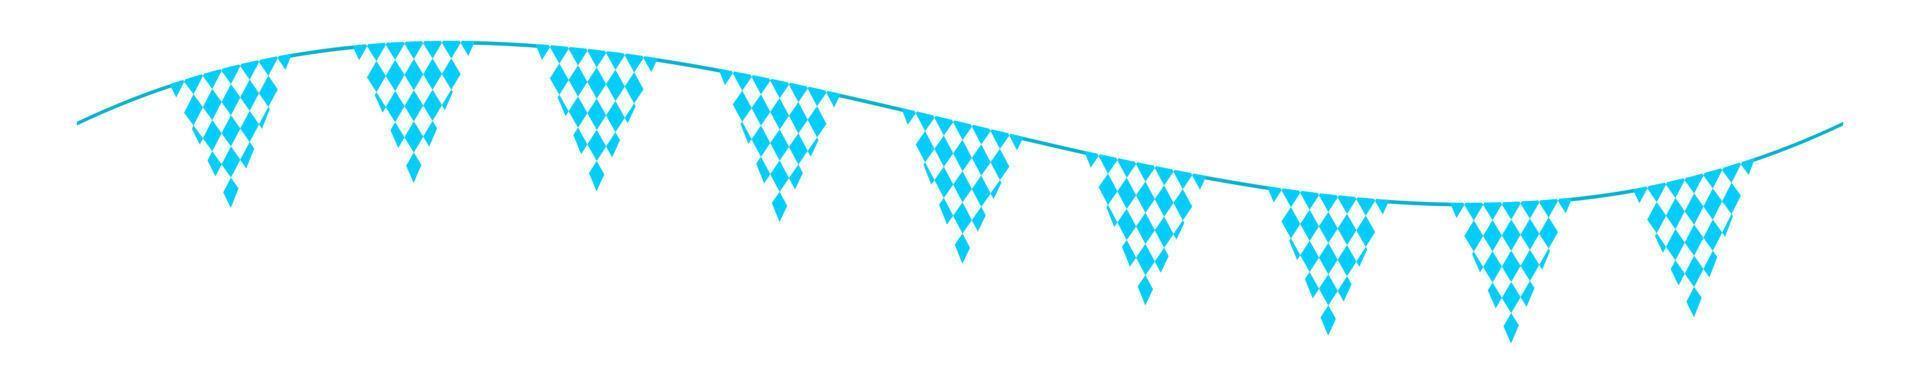 Oktoberfest Ammer mit Dreieck Flaggen auf winken Schnur. Girlande zum Deutsche Bier Festival mit Blau und Weiß Rhombus Muster. Dekoration zum Banner, Flyer, Karte, Poster vektor